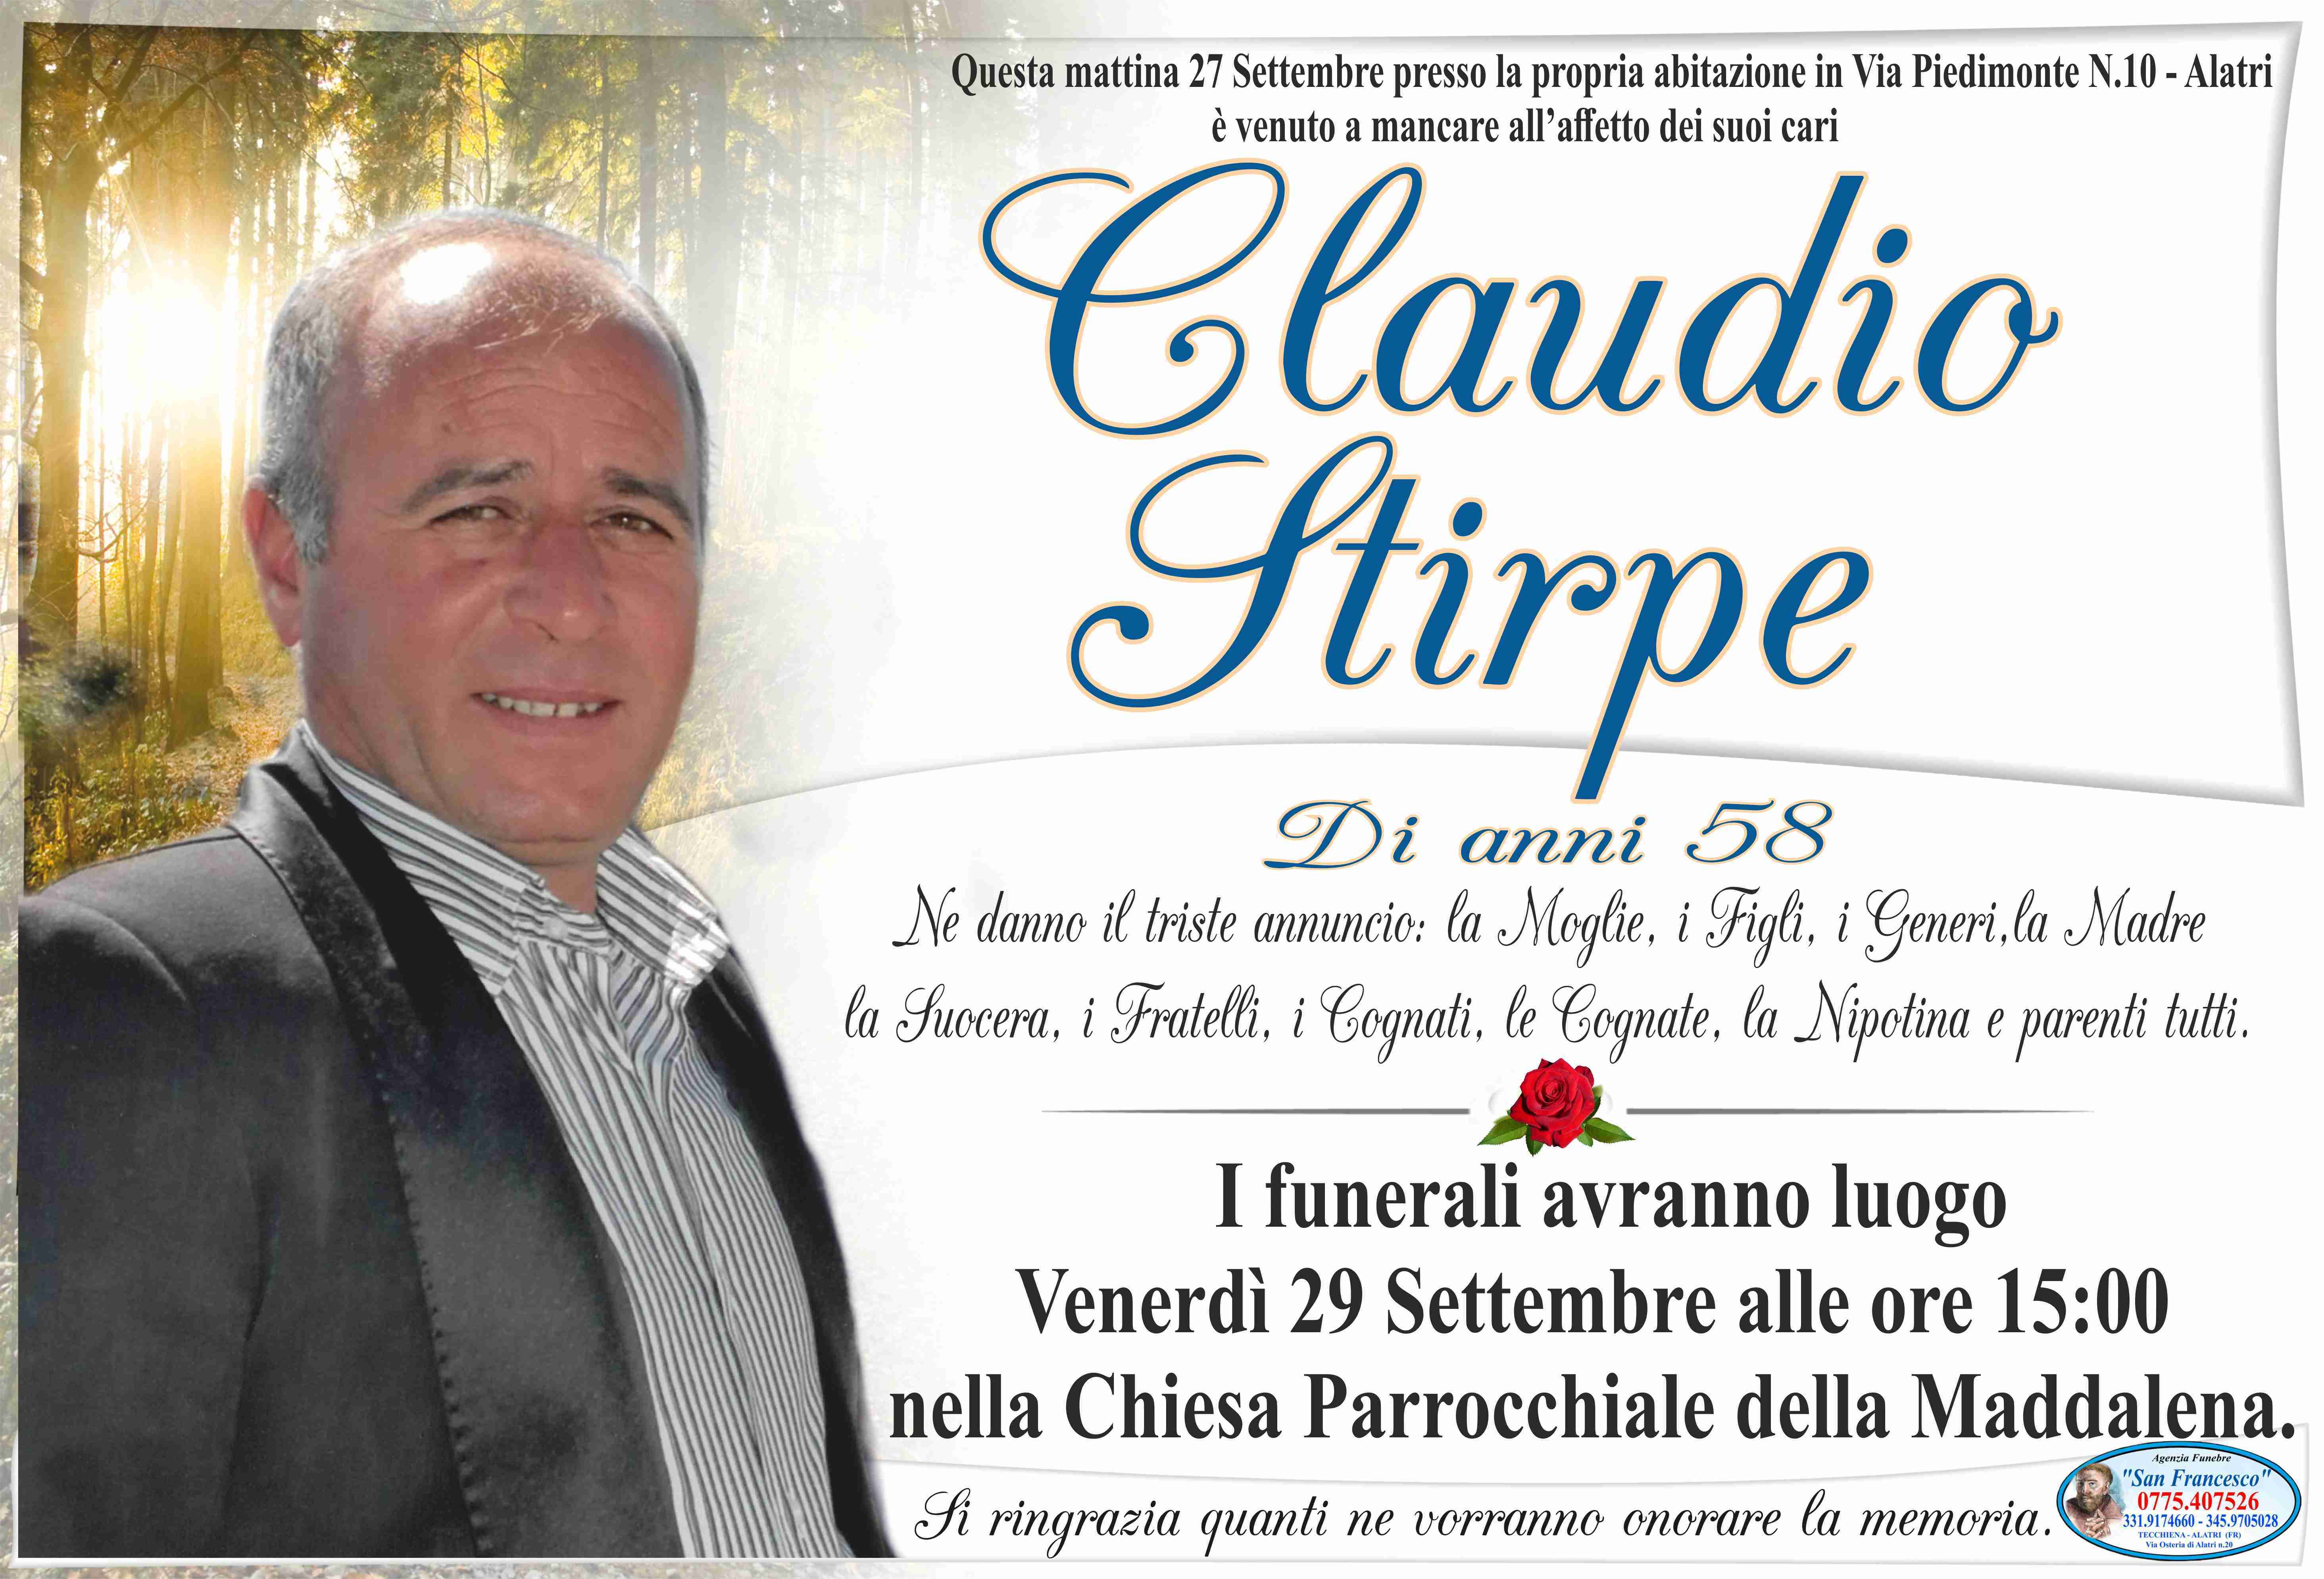 Claudio Stirpe